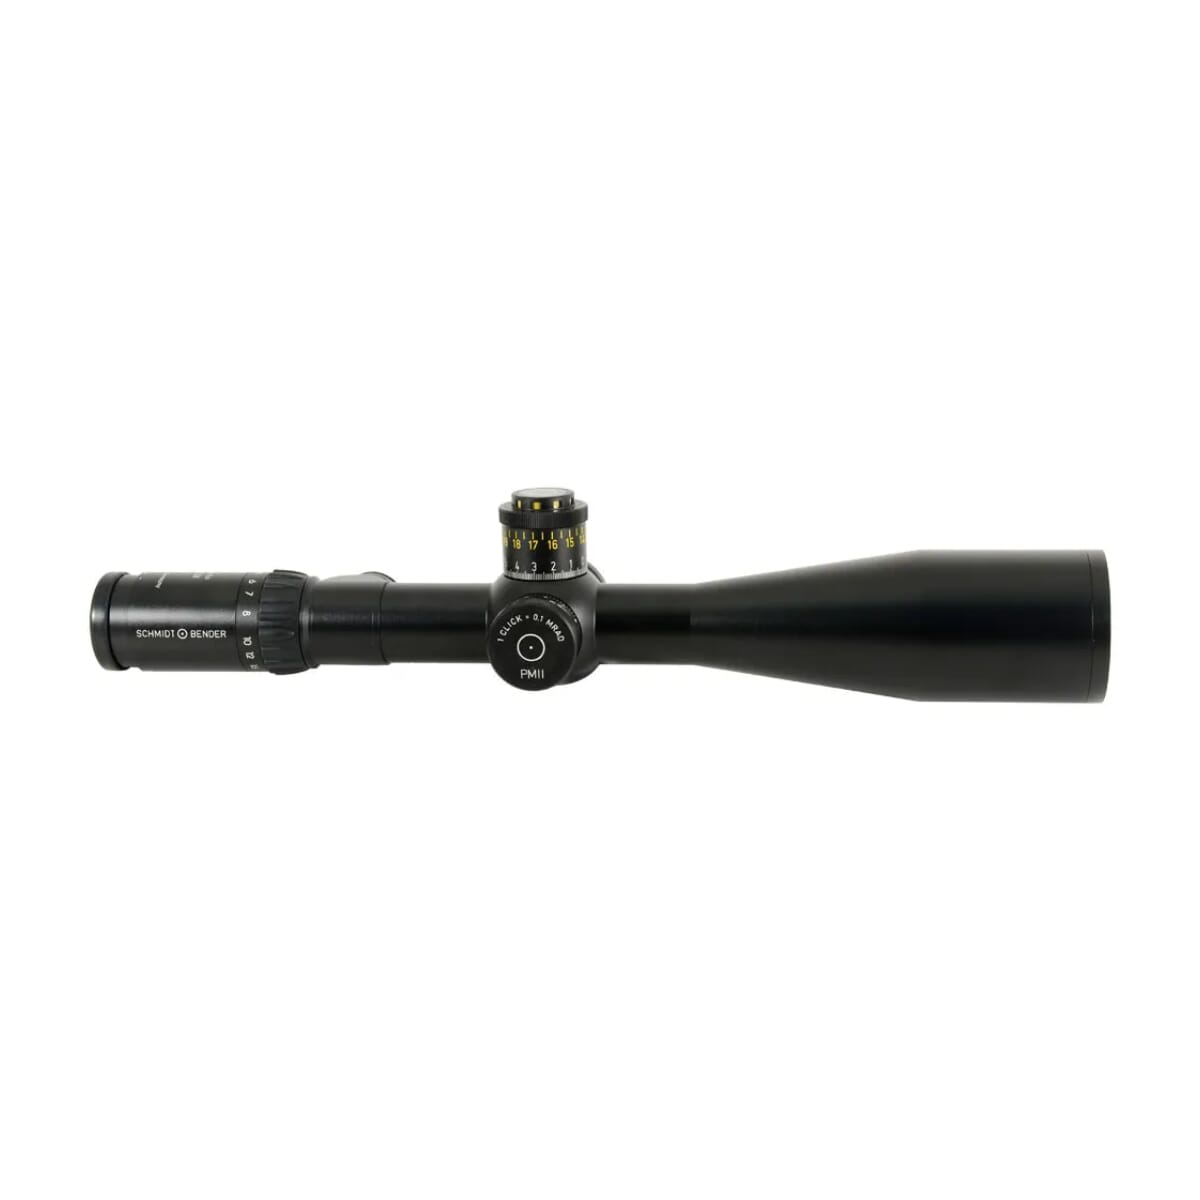 Schmidt Bender 5-25x56mm PM II LP MSR2 1cm ccw DT / ST Riflescope 689-911-812-90-68